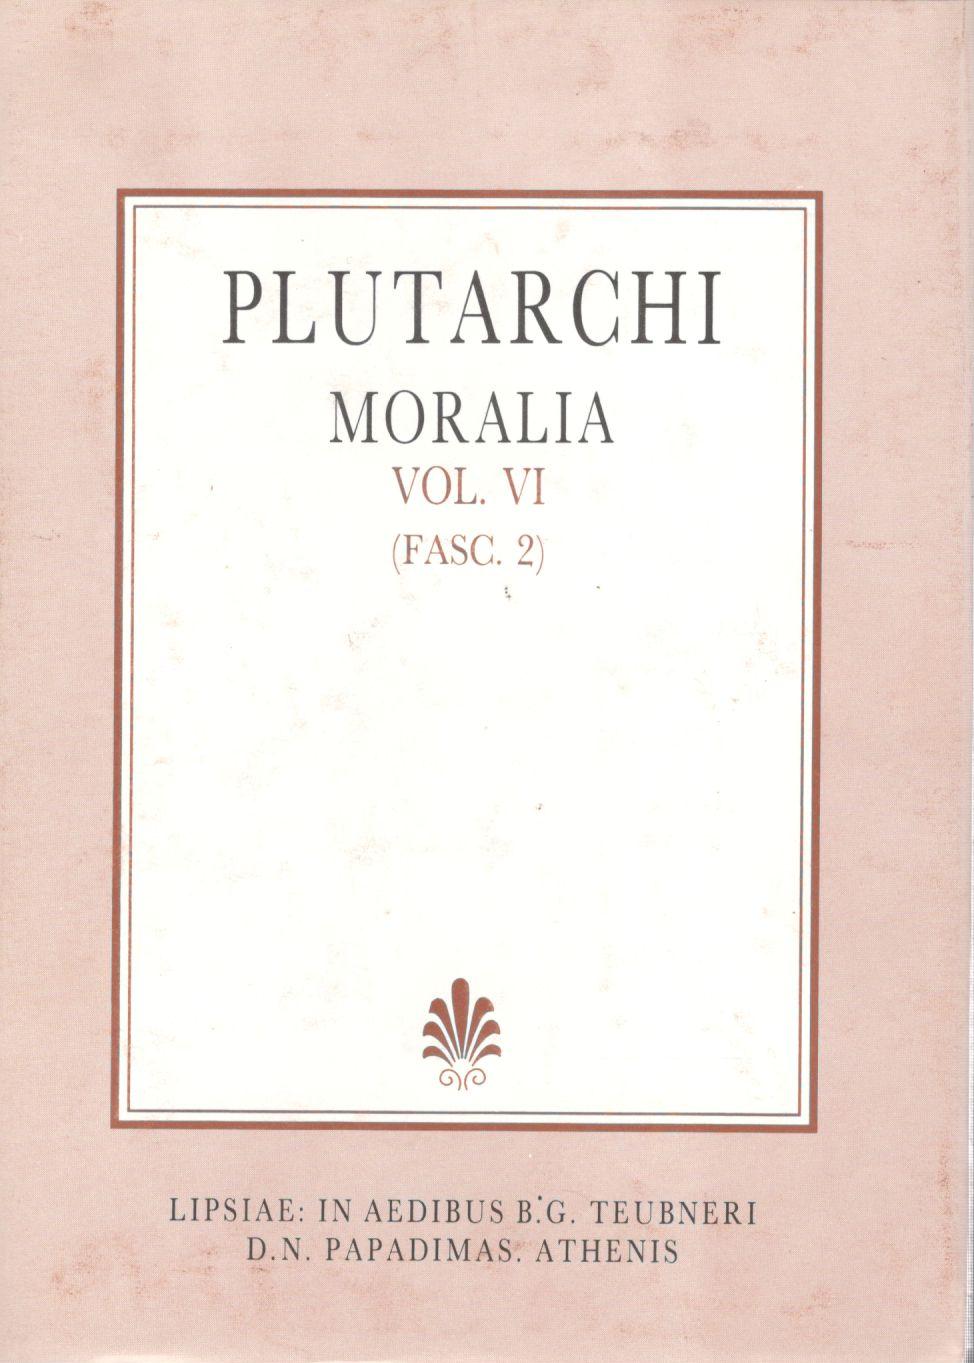 Plutarchi, Moralia, Vol. VI, (Fasc. 2), [Πλουτάρχου, Ηθικά, τ. ΣΤ', (τεύχ. 2)]